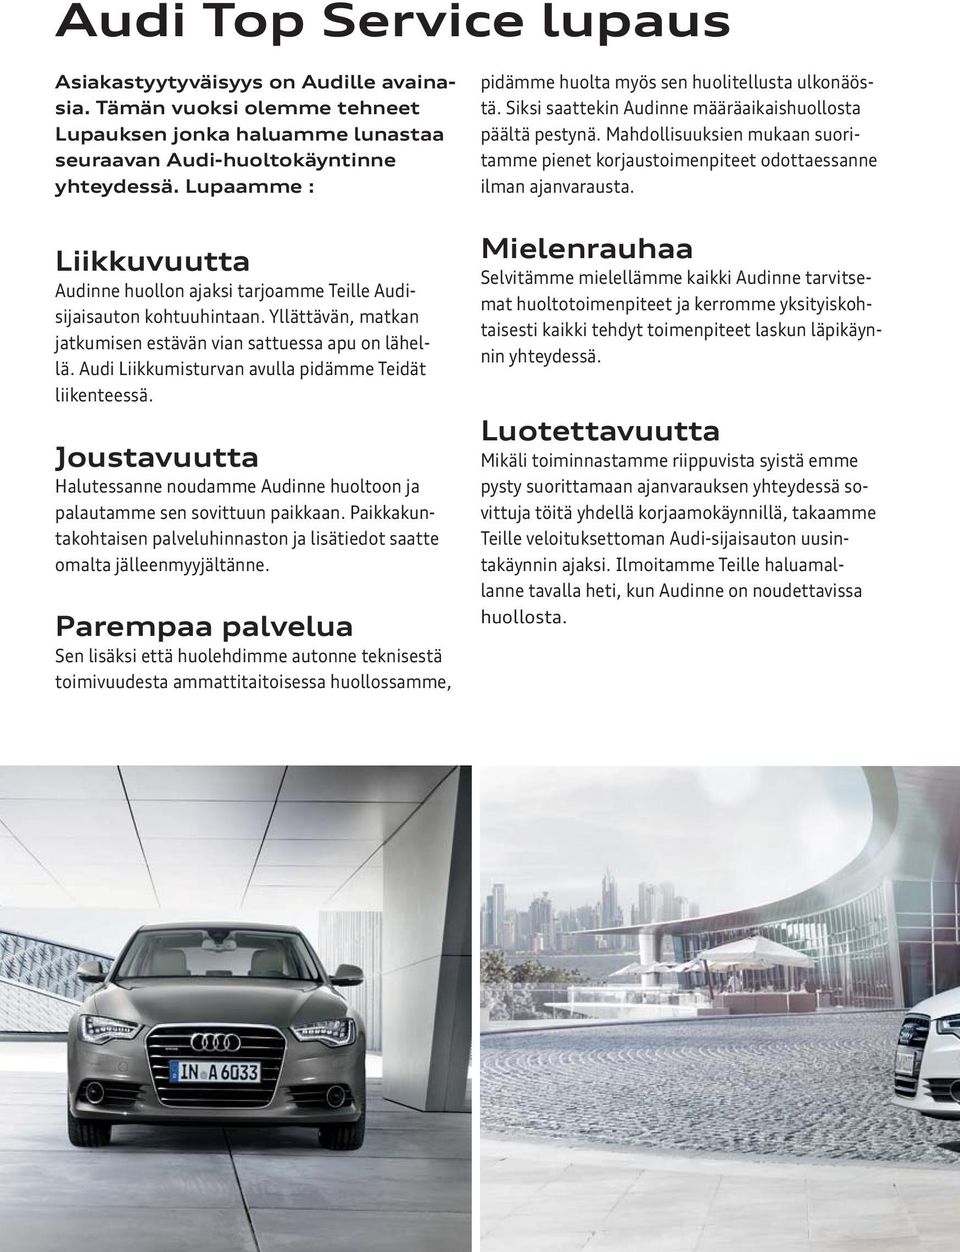 Audi Liikkumisturvan avulla pidämme Teidät liikenteessä. Joustavuutta Halutessanne noudamme Audinne huoltoon ja palautamme sen sovittuun paikkaan.